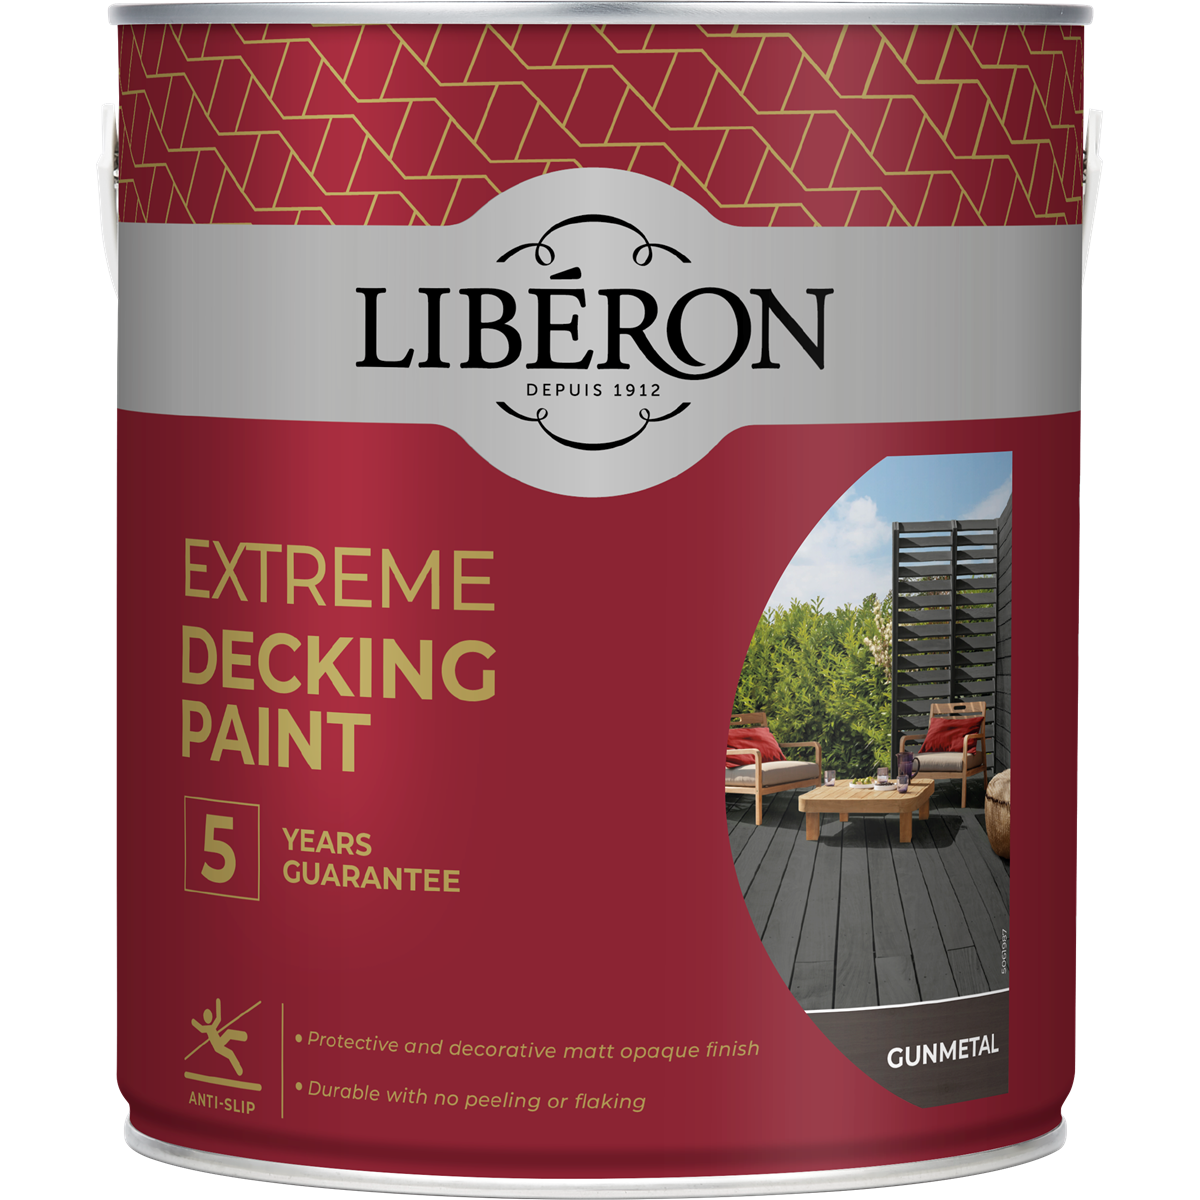 Liberon Extreme Decking Paint Gun Metal2.5L